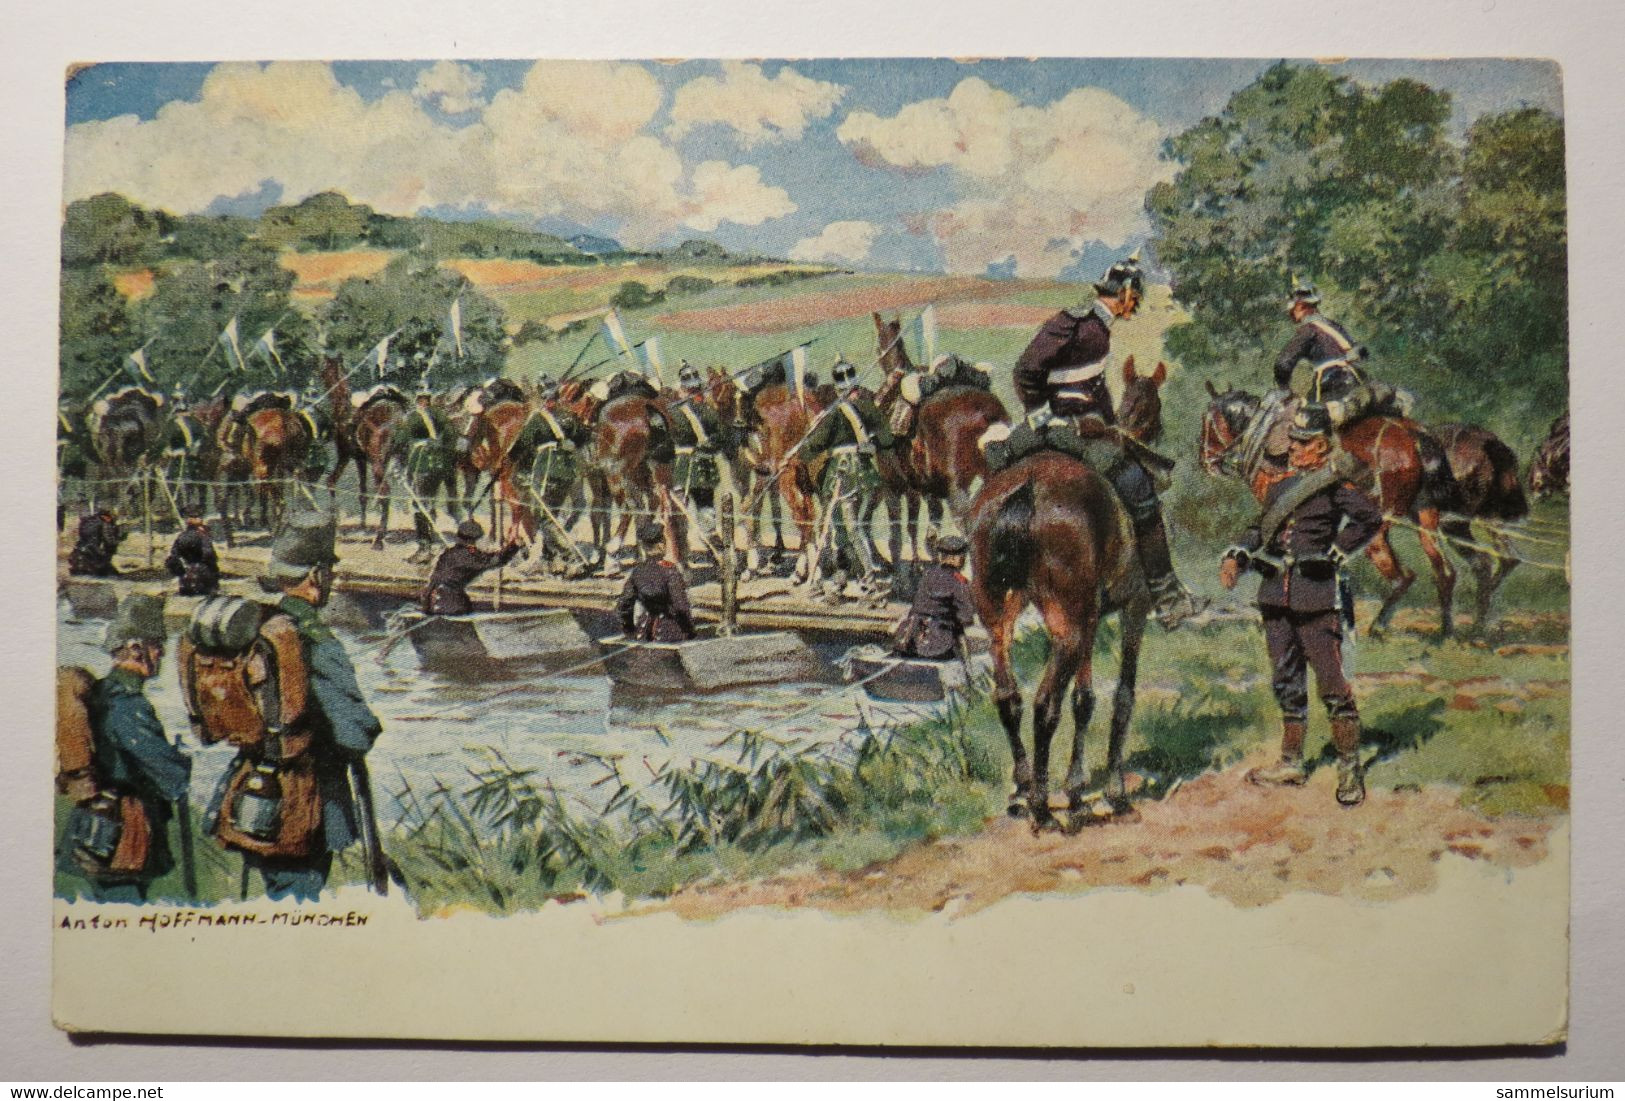 (11/11/54) Postkarte/AK "Anton Hoffmann München" Soldaten Mit Pferden Bei Der Flußüberquerung - Hoffmann, Anton - Munich